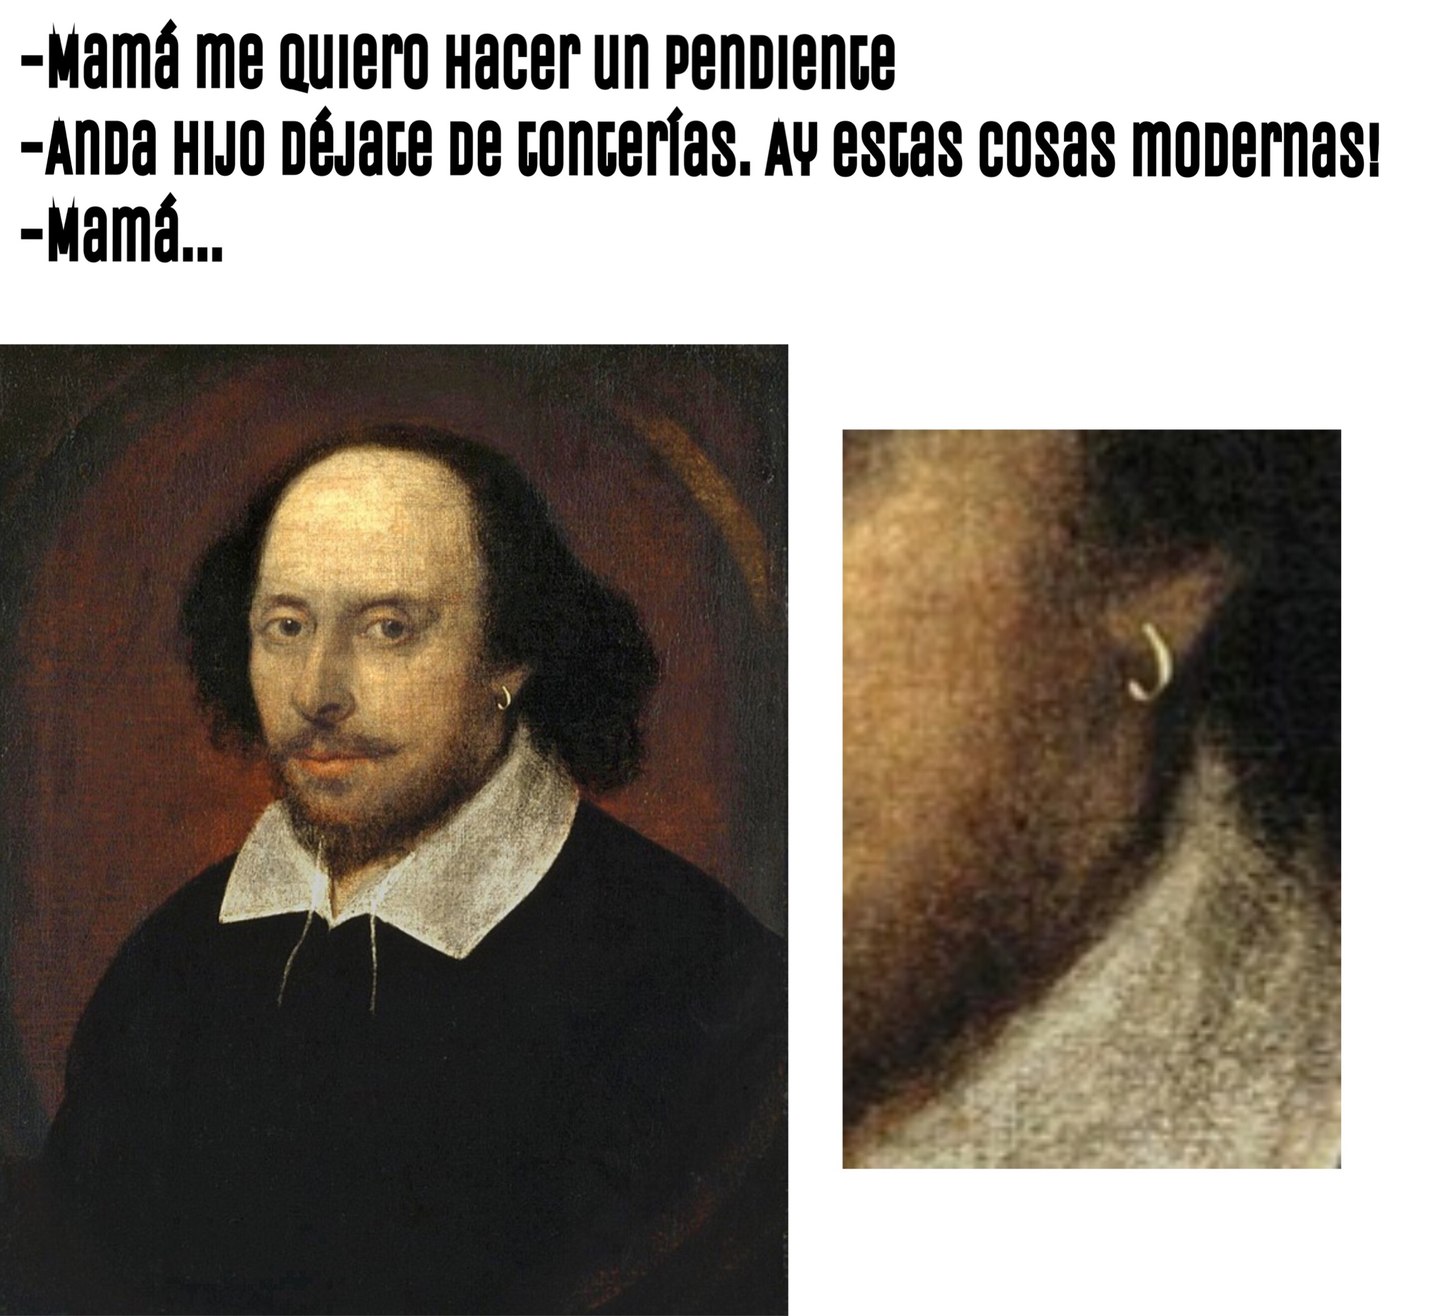 Shakespeare - meme